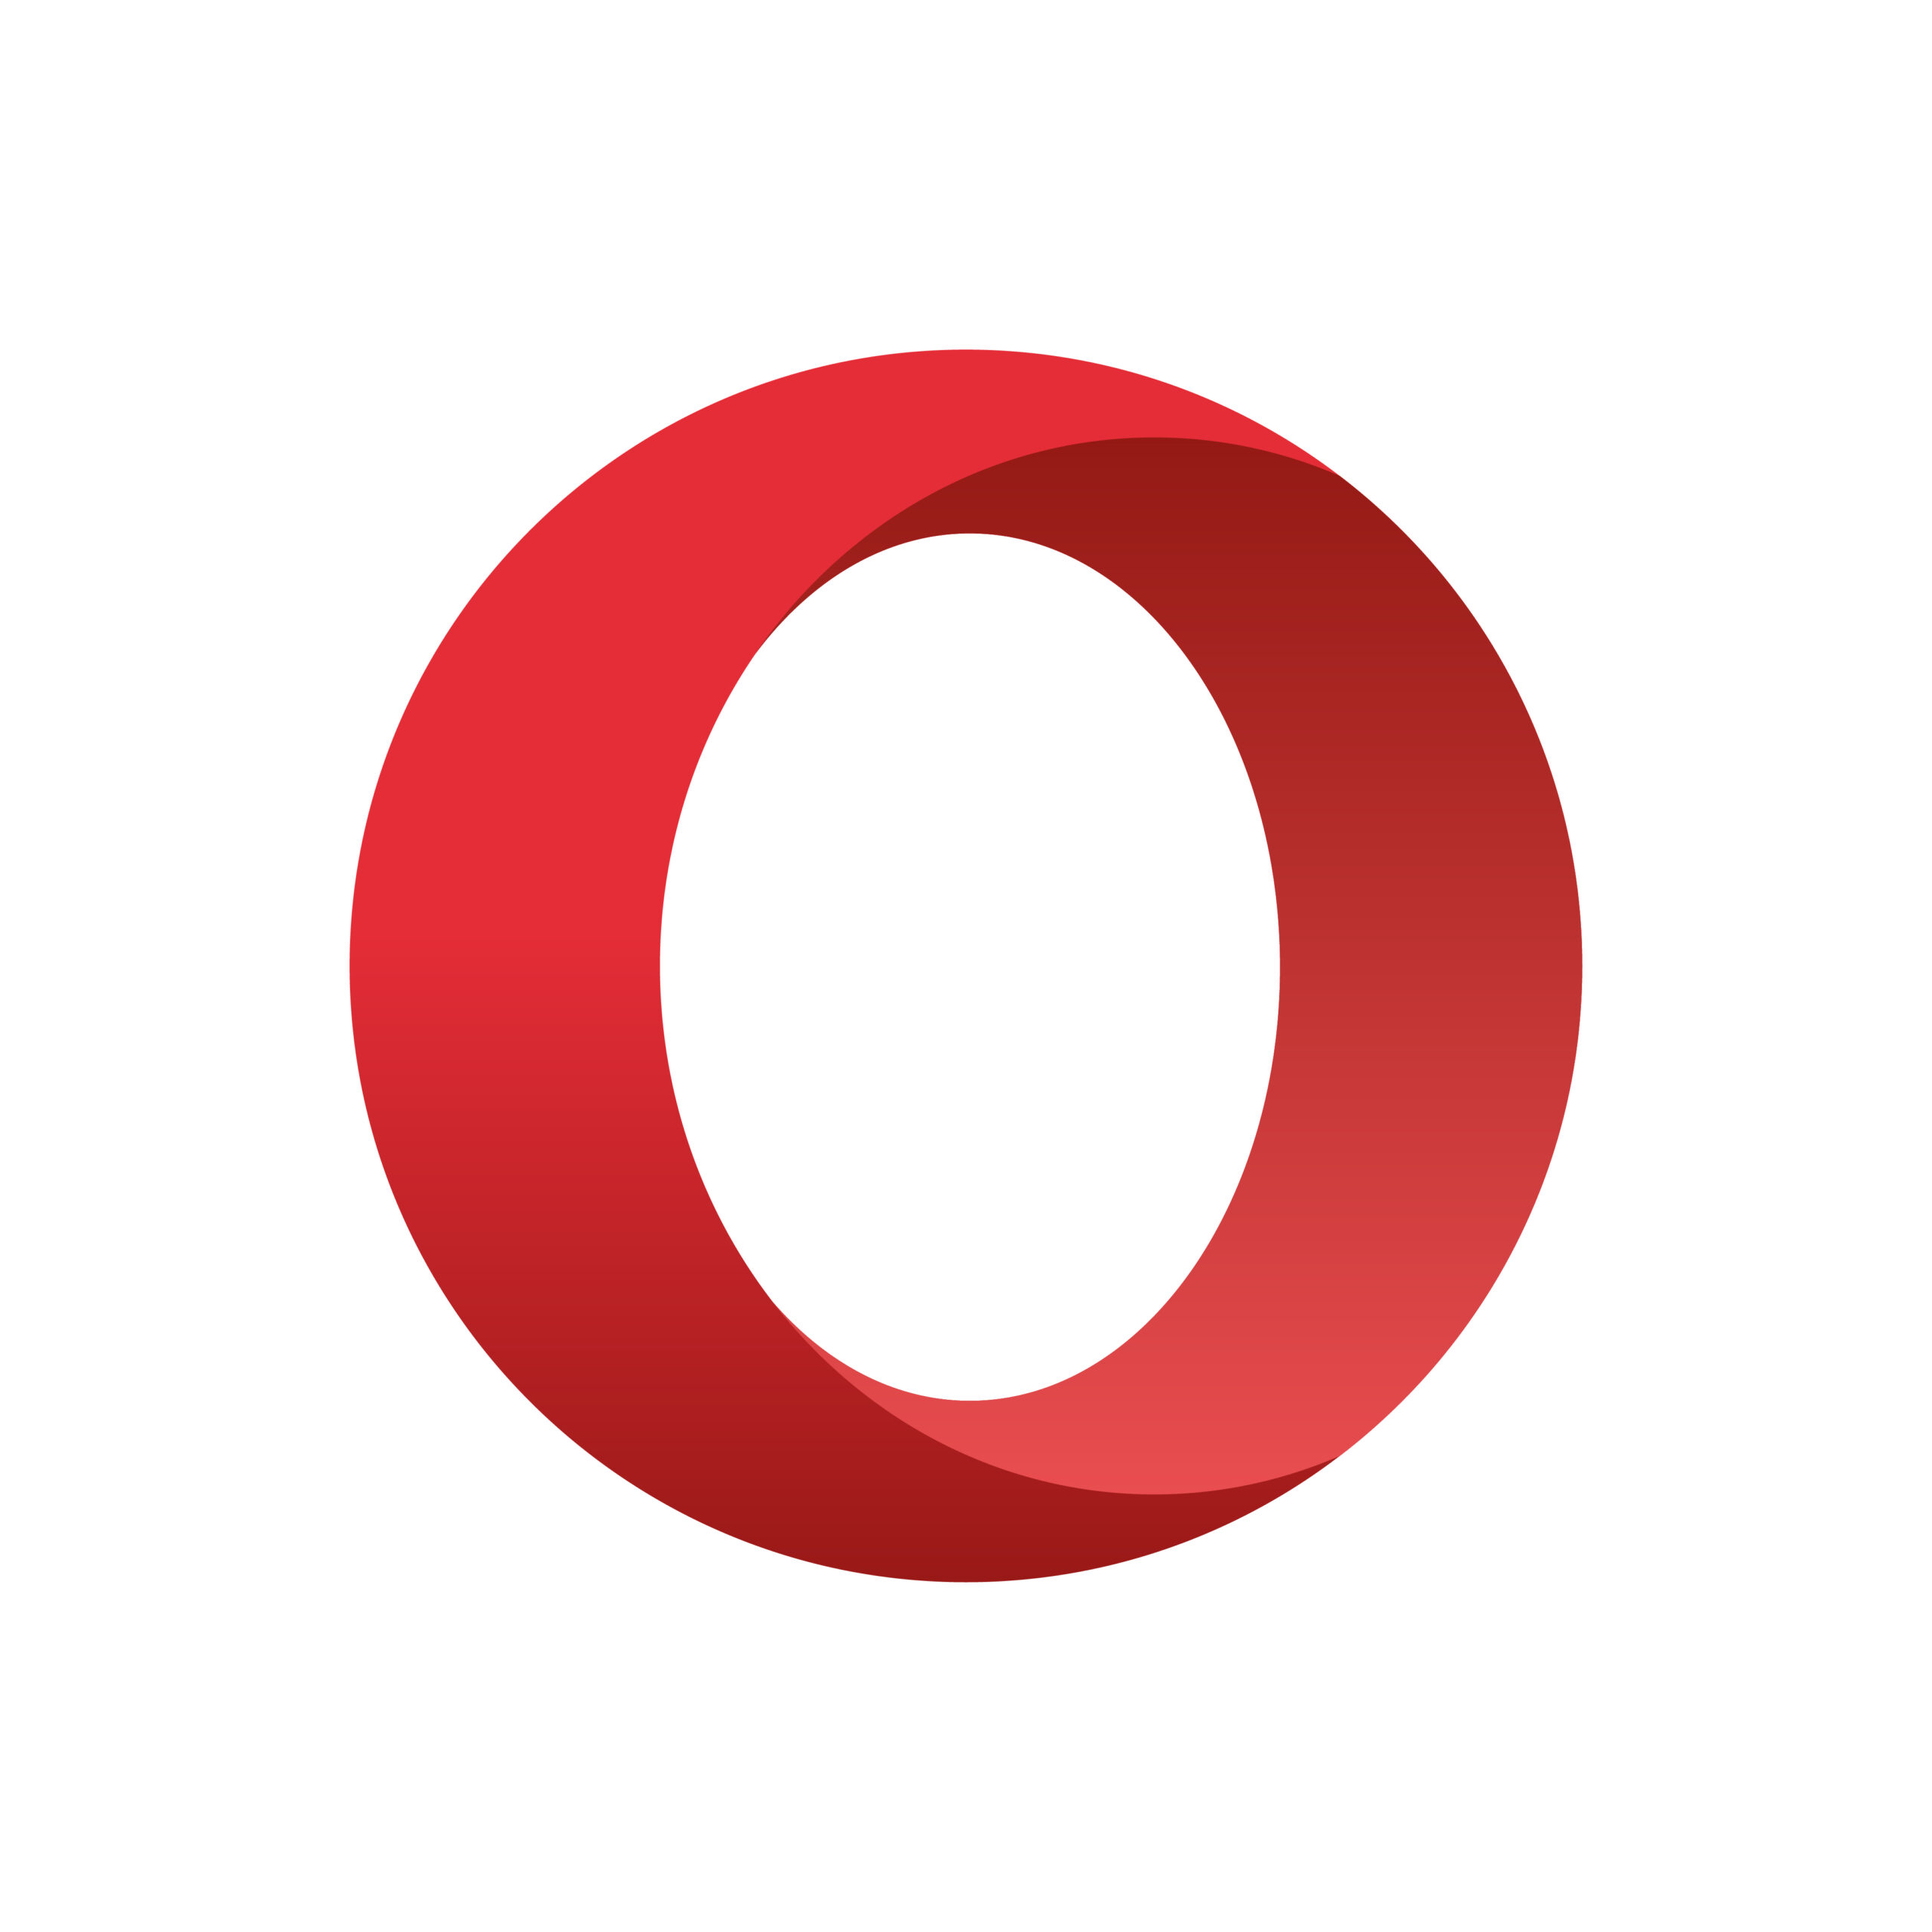 Discover more than 120 opera mini logo super hot - camera.edu.vn